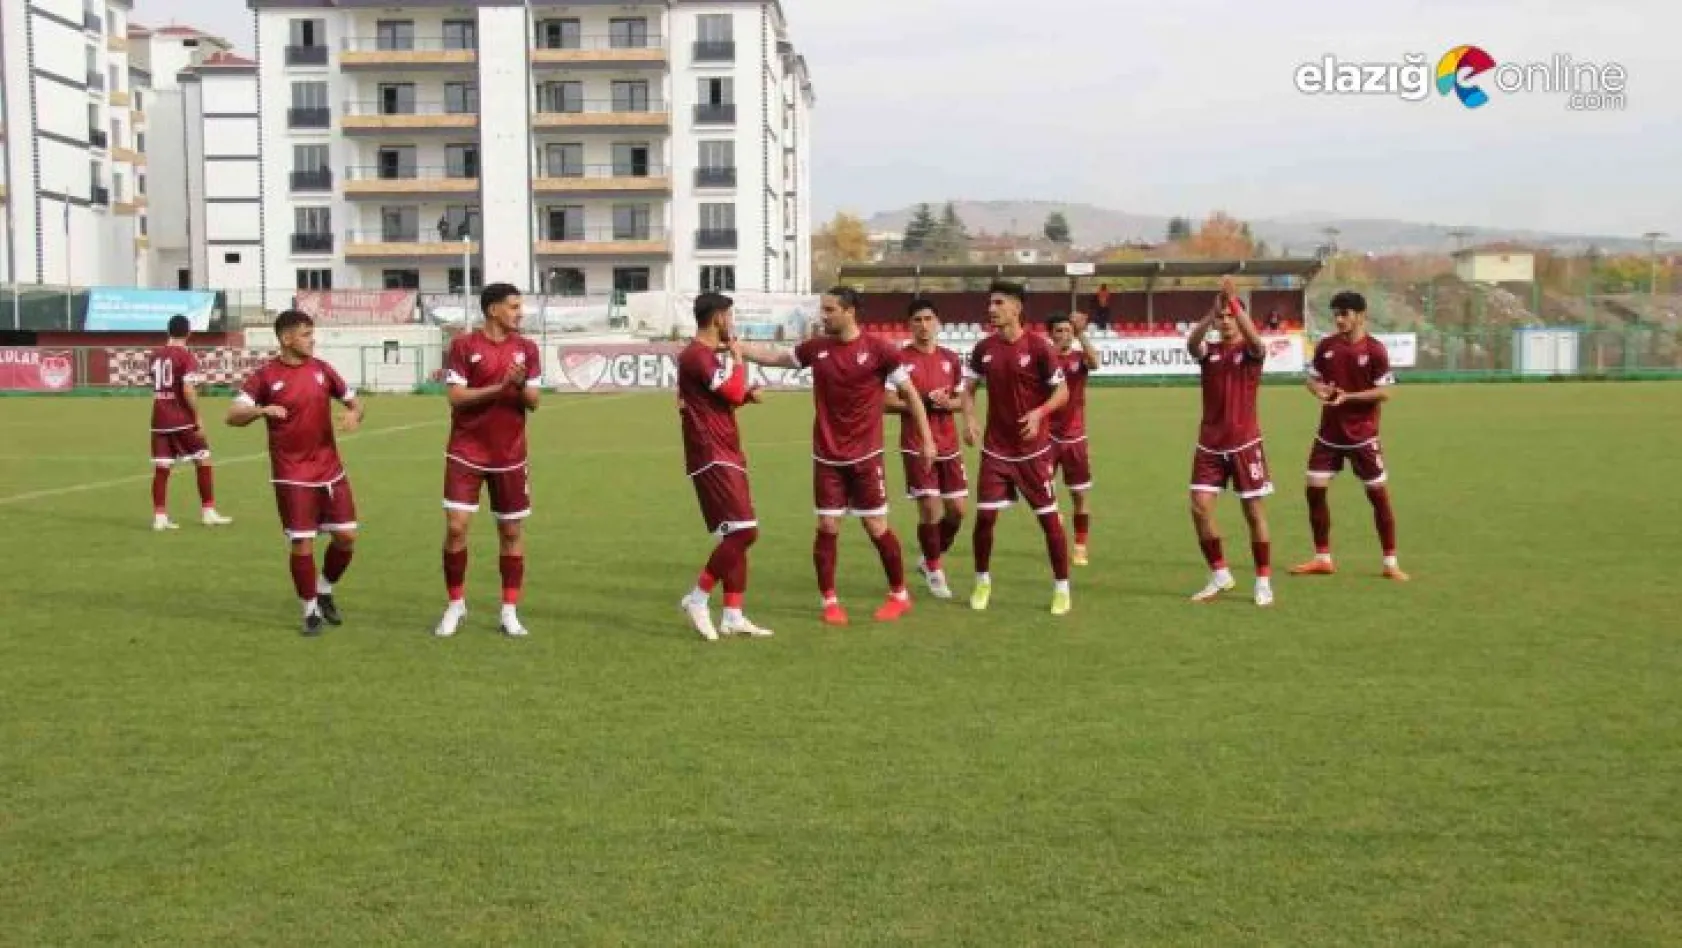 Elazığspor çıktığı son 6 maçta galibiyete hasret kaldı